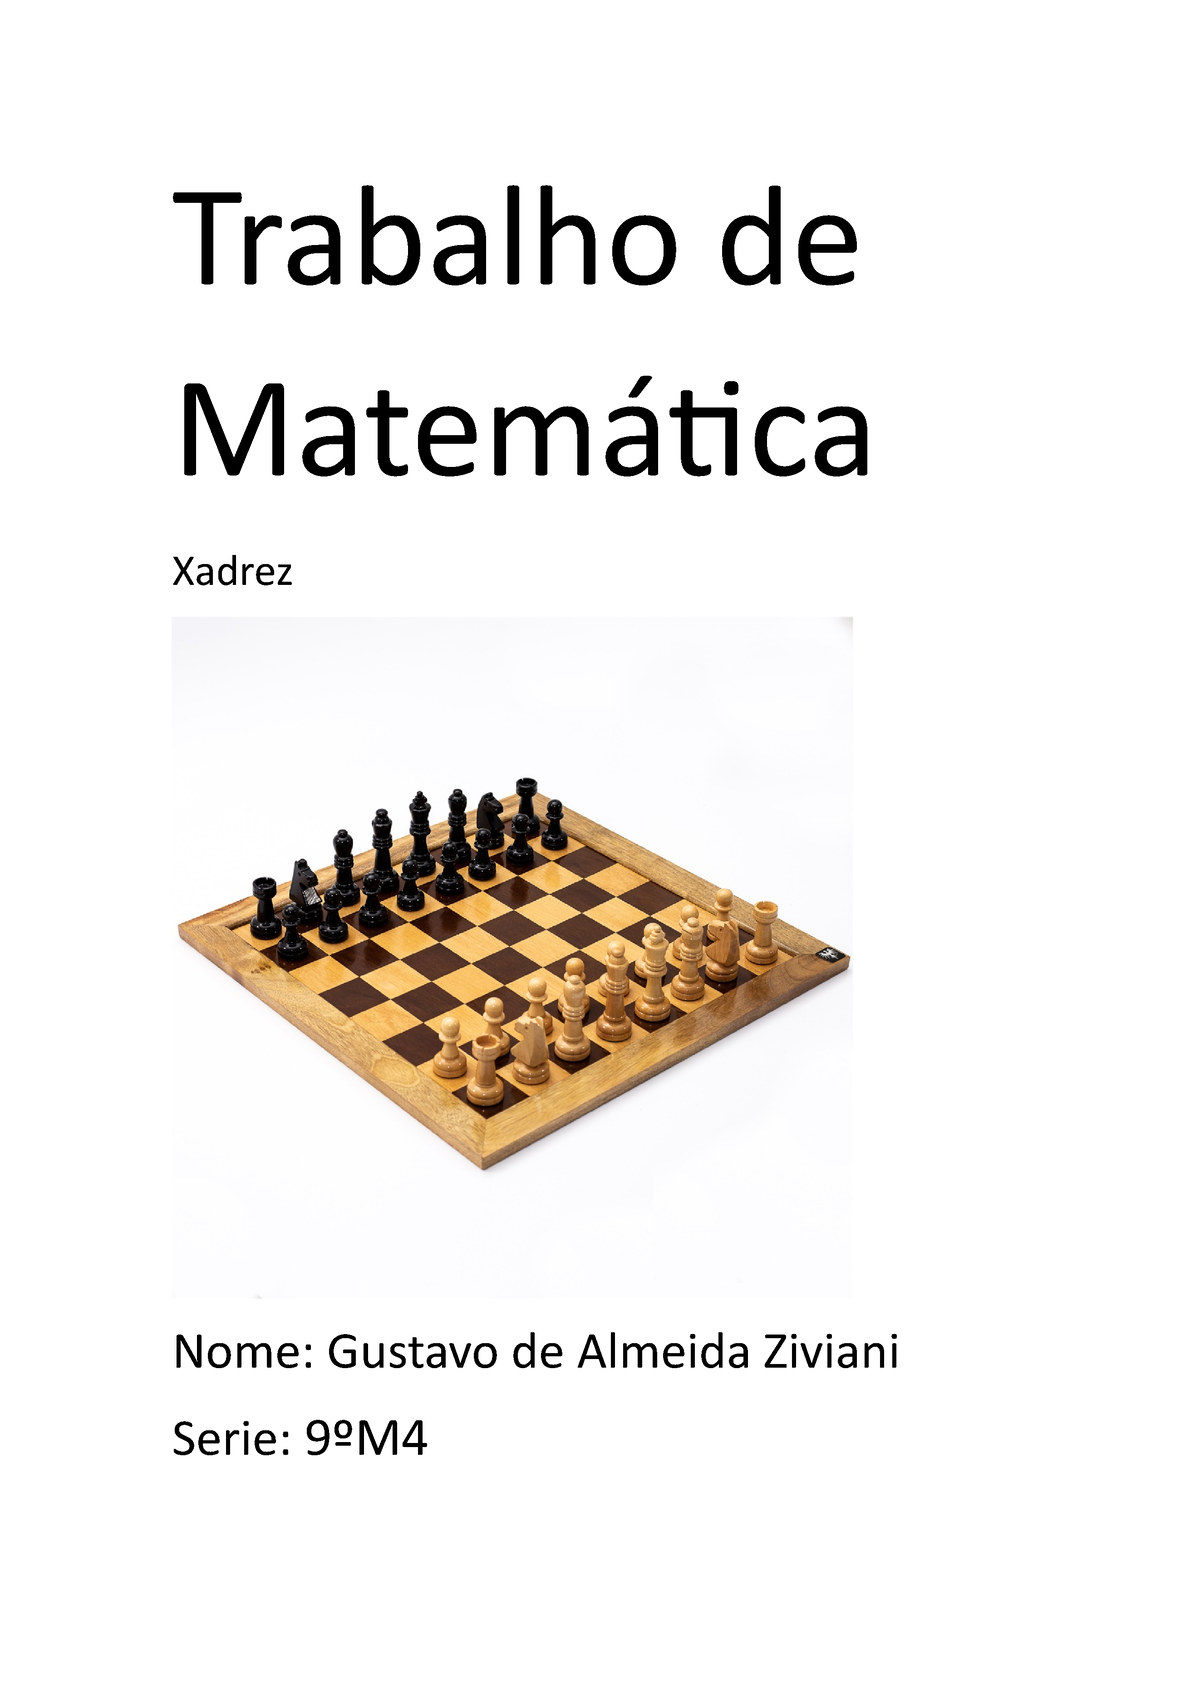  Mequinho. O Xadrez De Um Grande Mestre (Em Portuguese